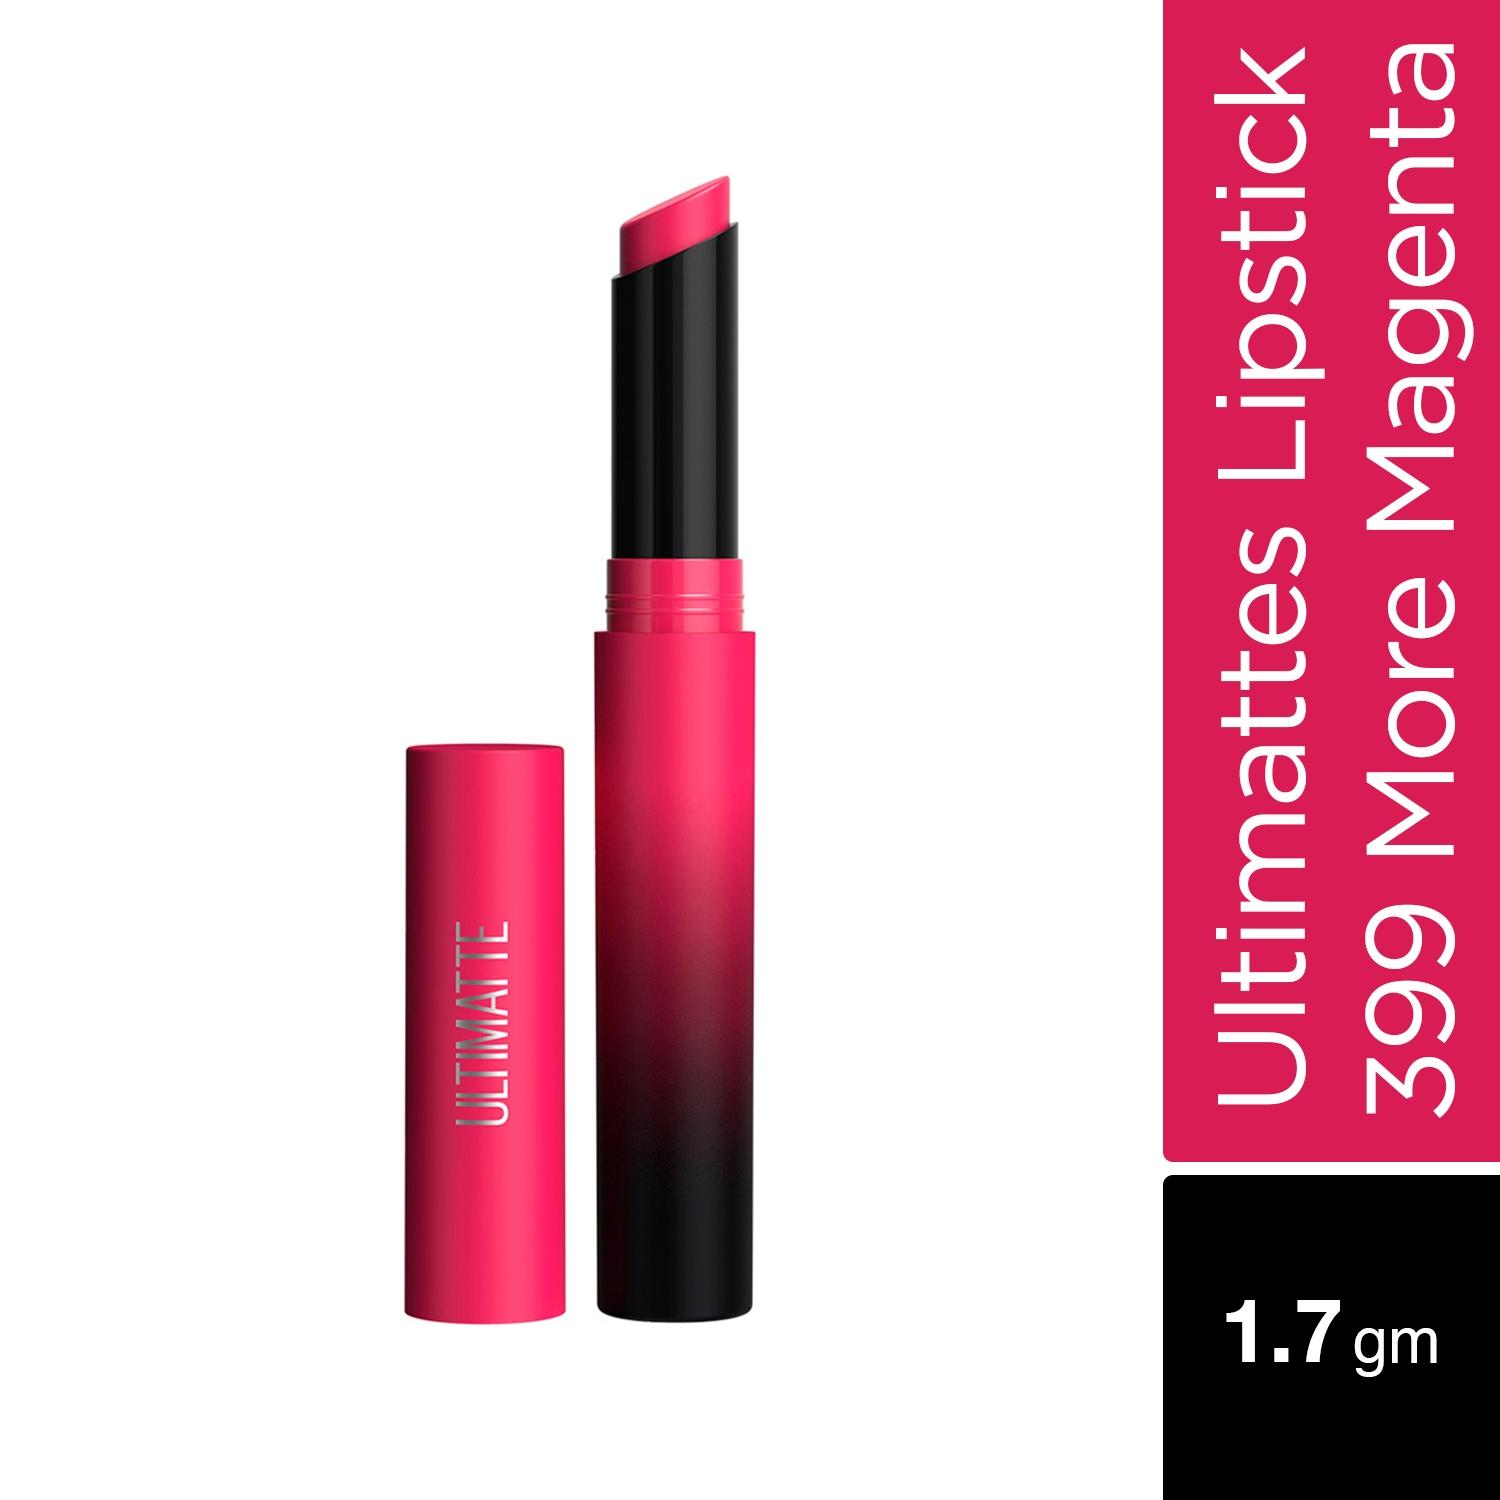 Maybelline New York Color Sensational Ultimattes Lipstick - More Magenta (1.7g)